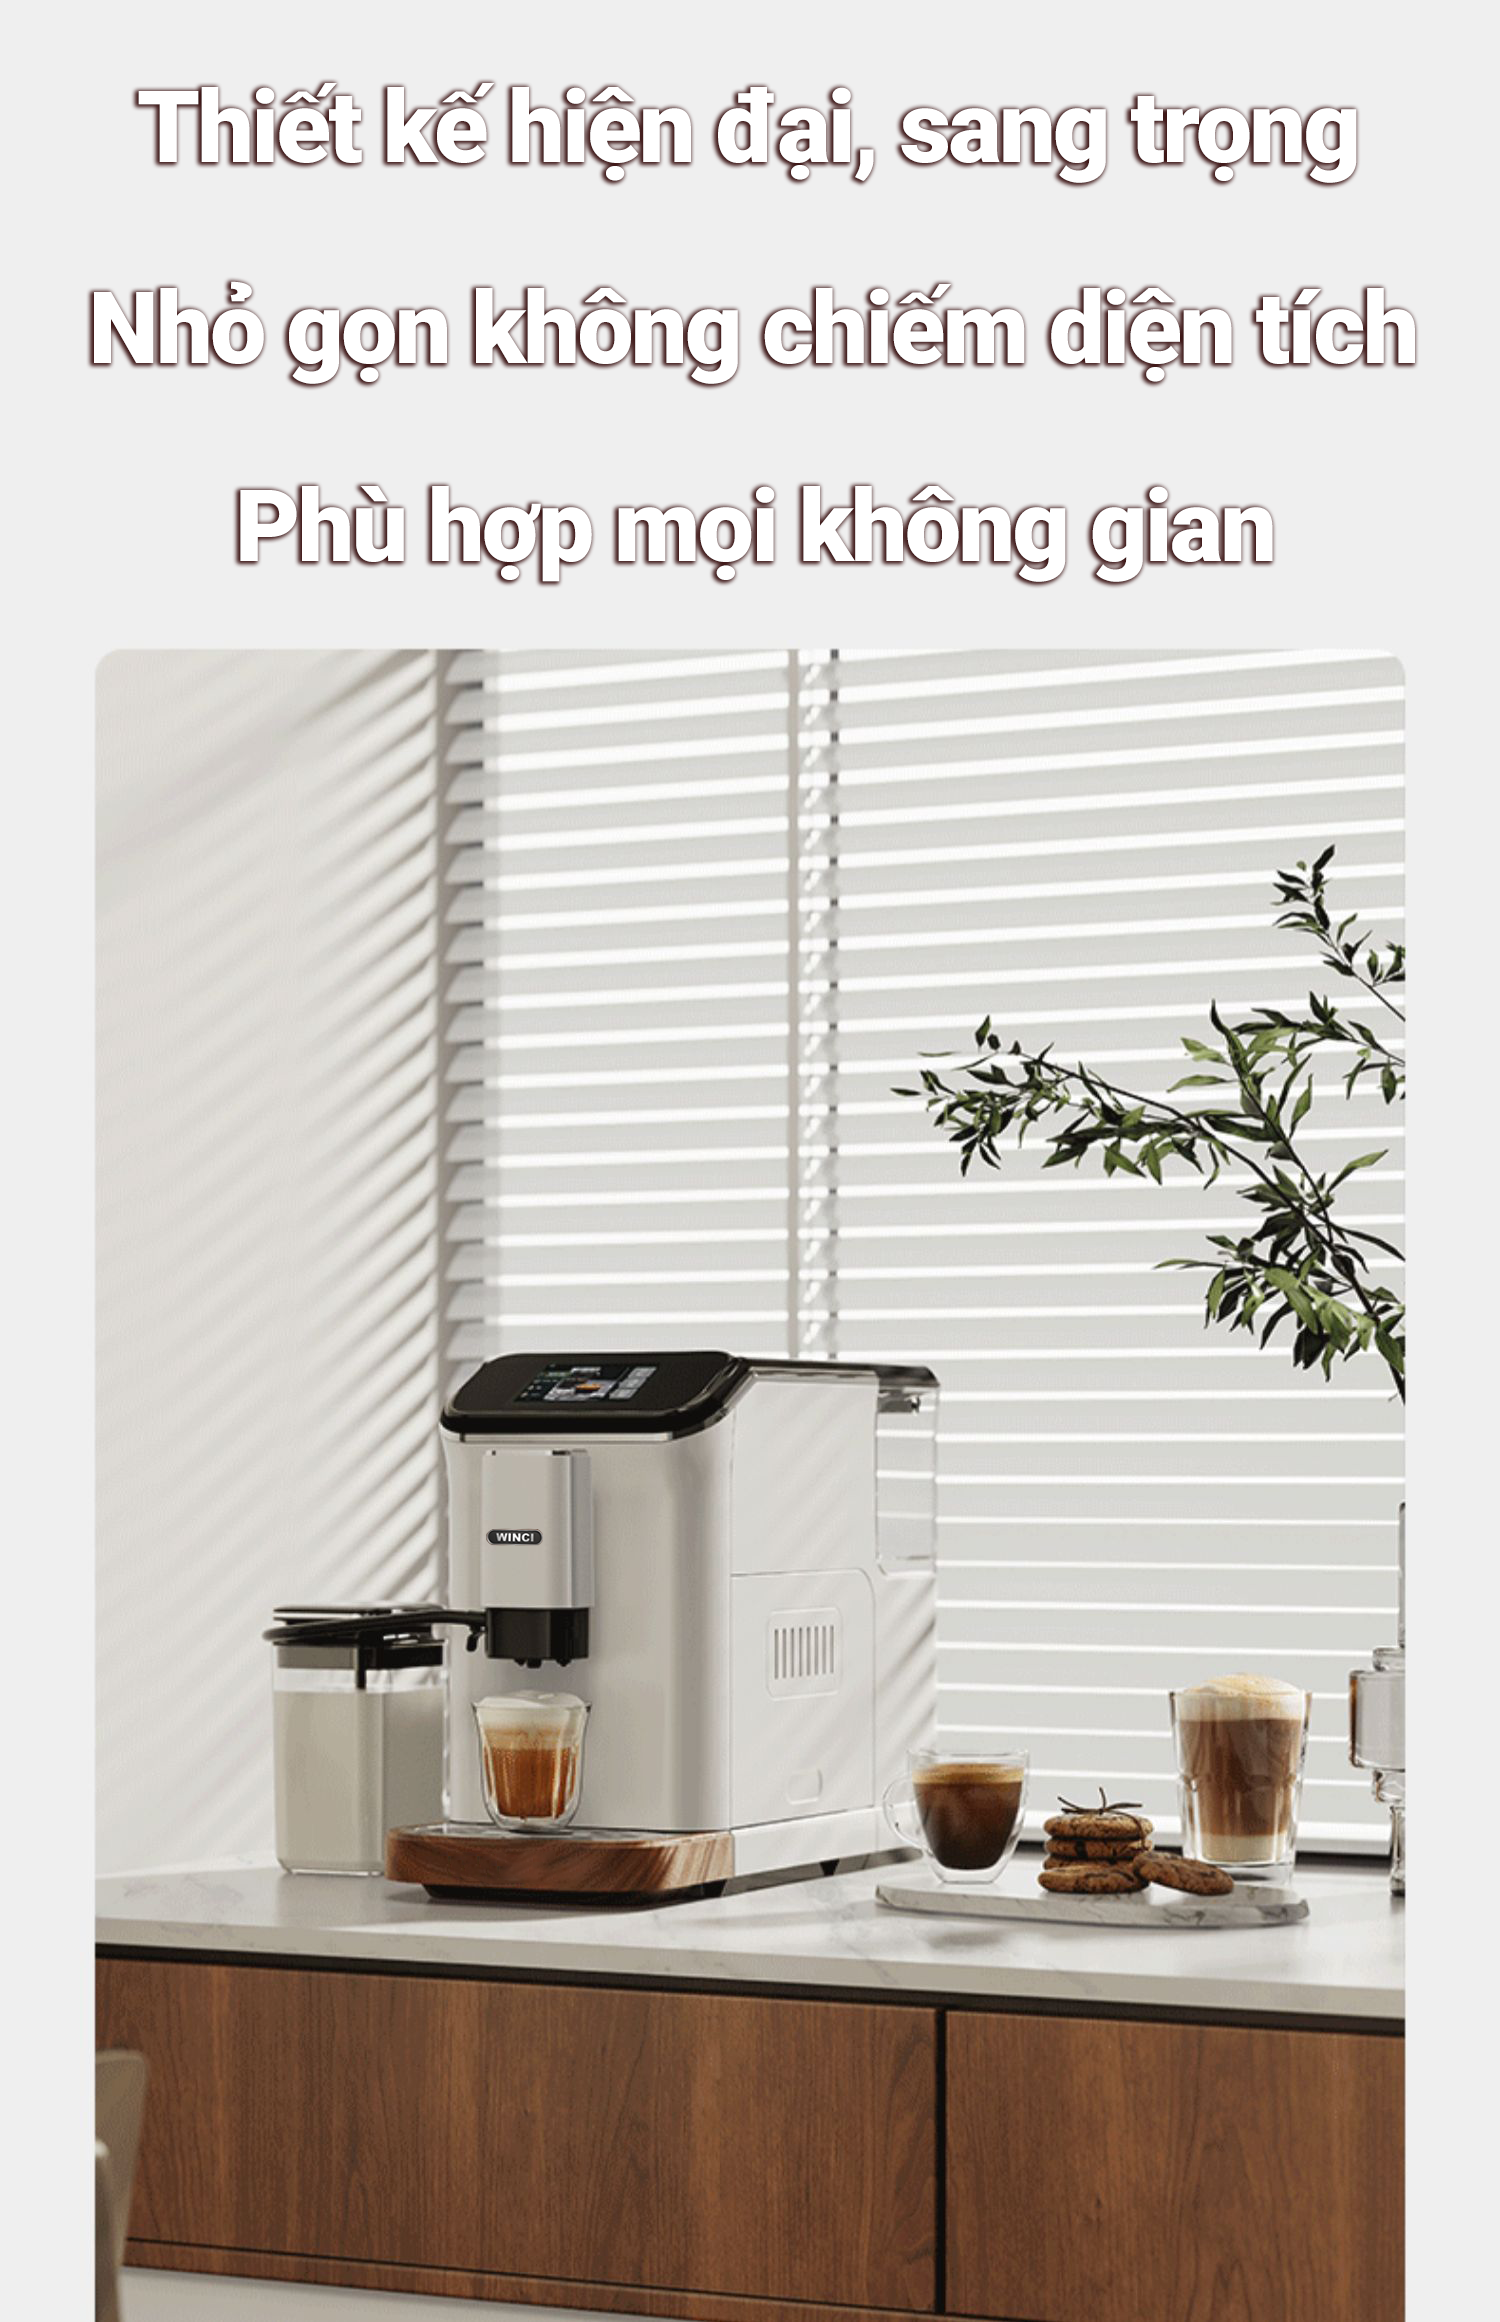 Thiết kế hiện đại và sang trọng của máy pha cà phê Winci EM64